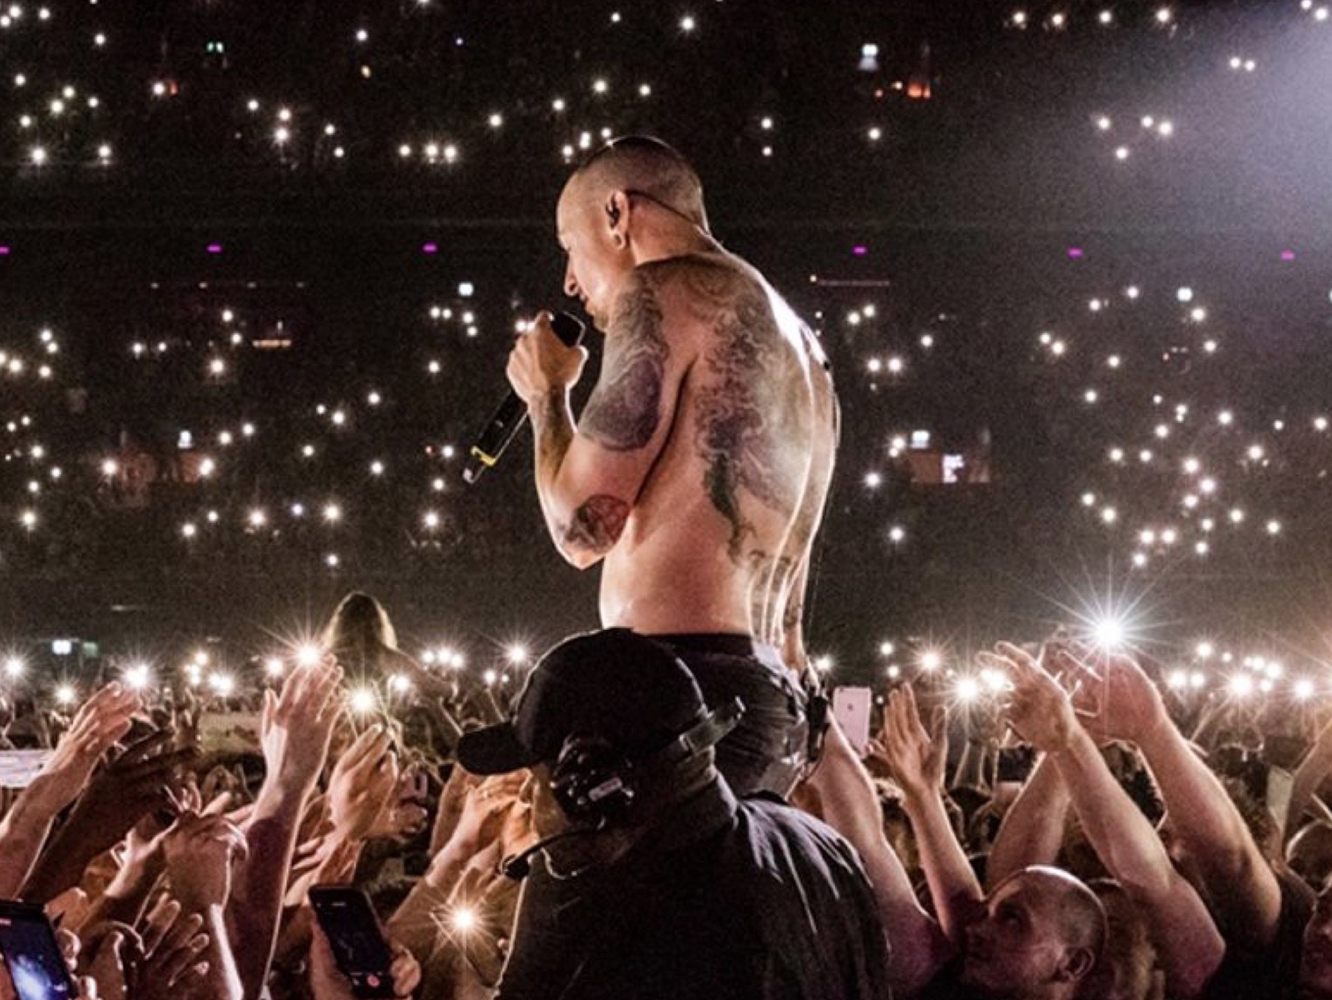  Estos son los ‘Man In The Mirror’ de Linkin Park tras la muerte de su vocalista